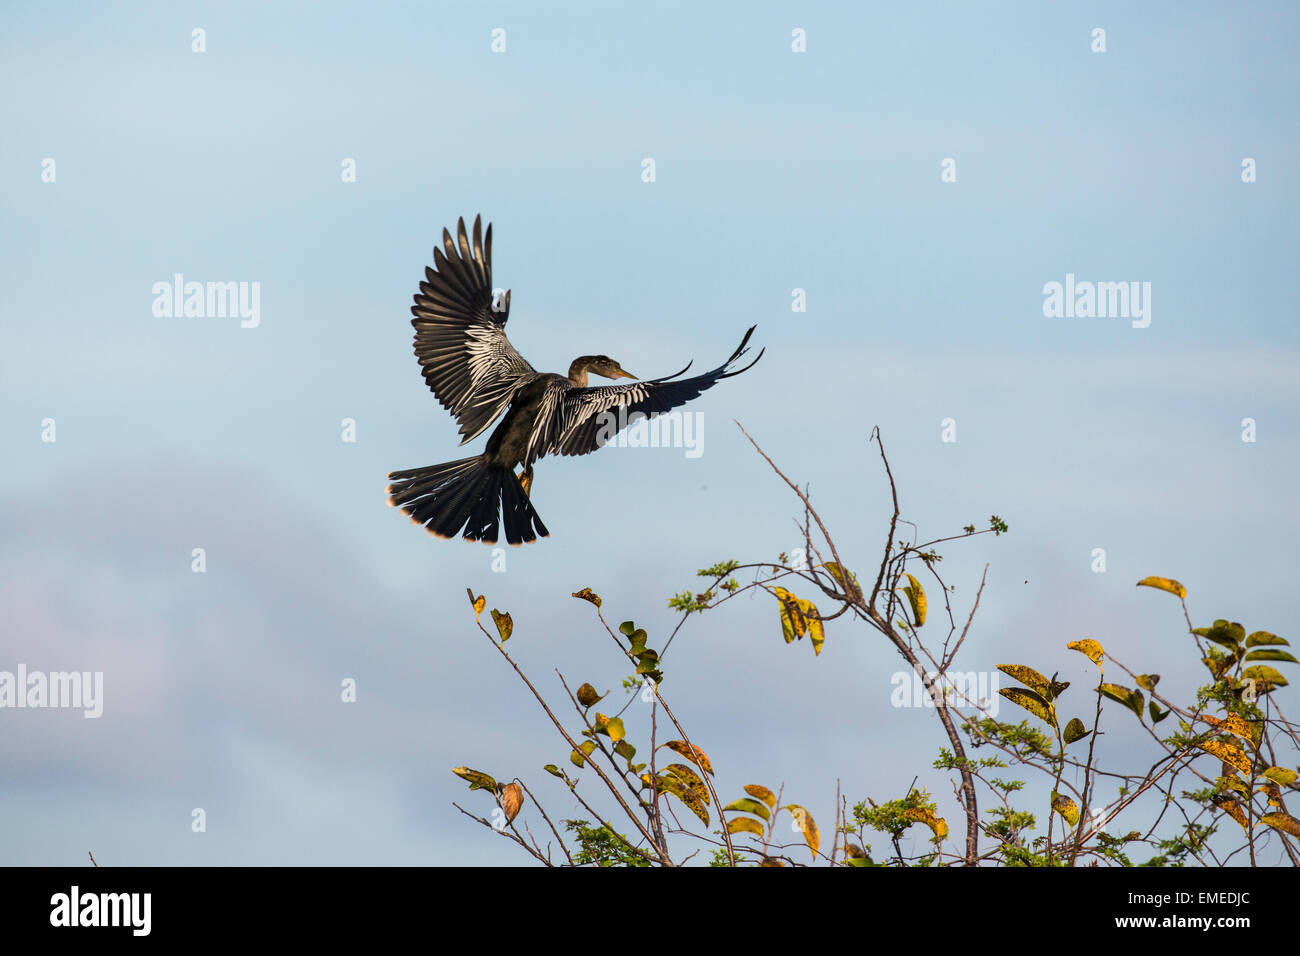 Flying Anhinga or American darter (Anhinga anhinga) in the Florida Everglades National Park, USA. Stock Photo